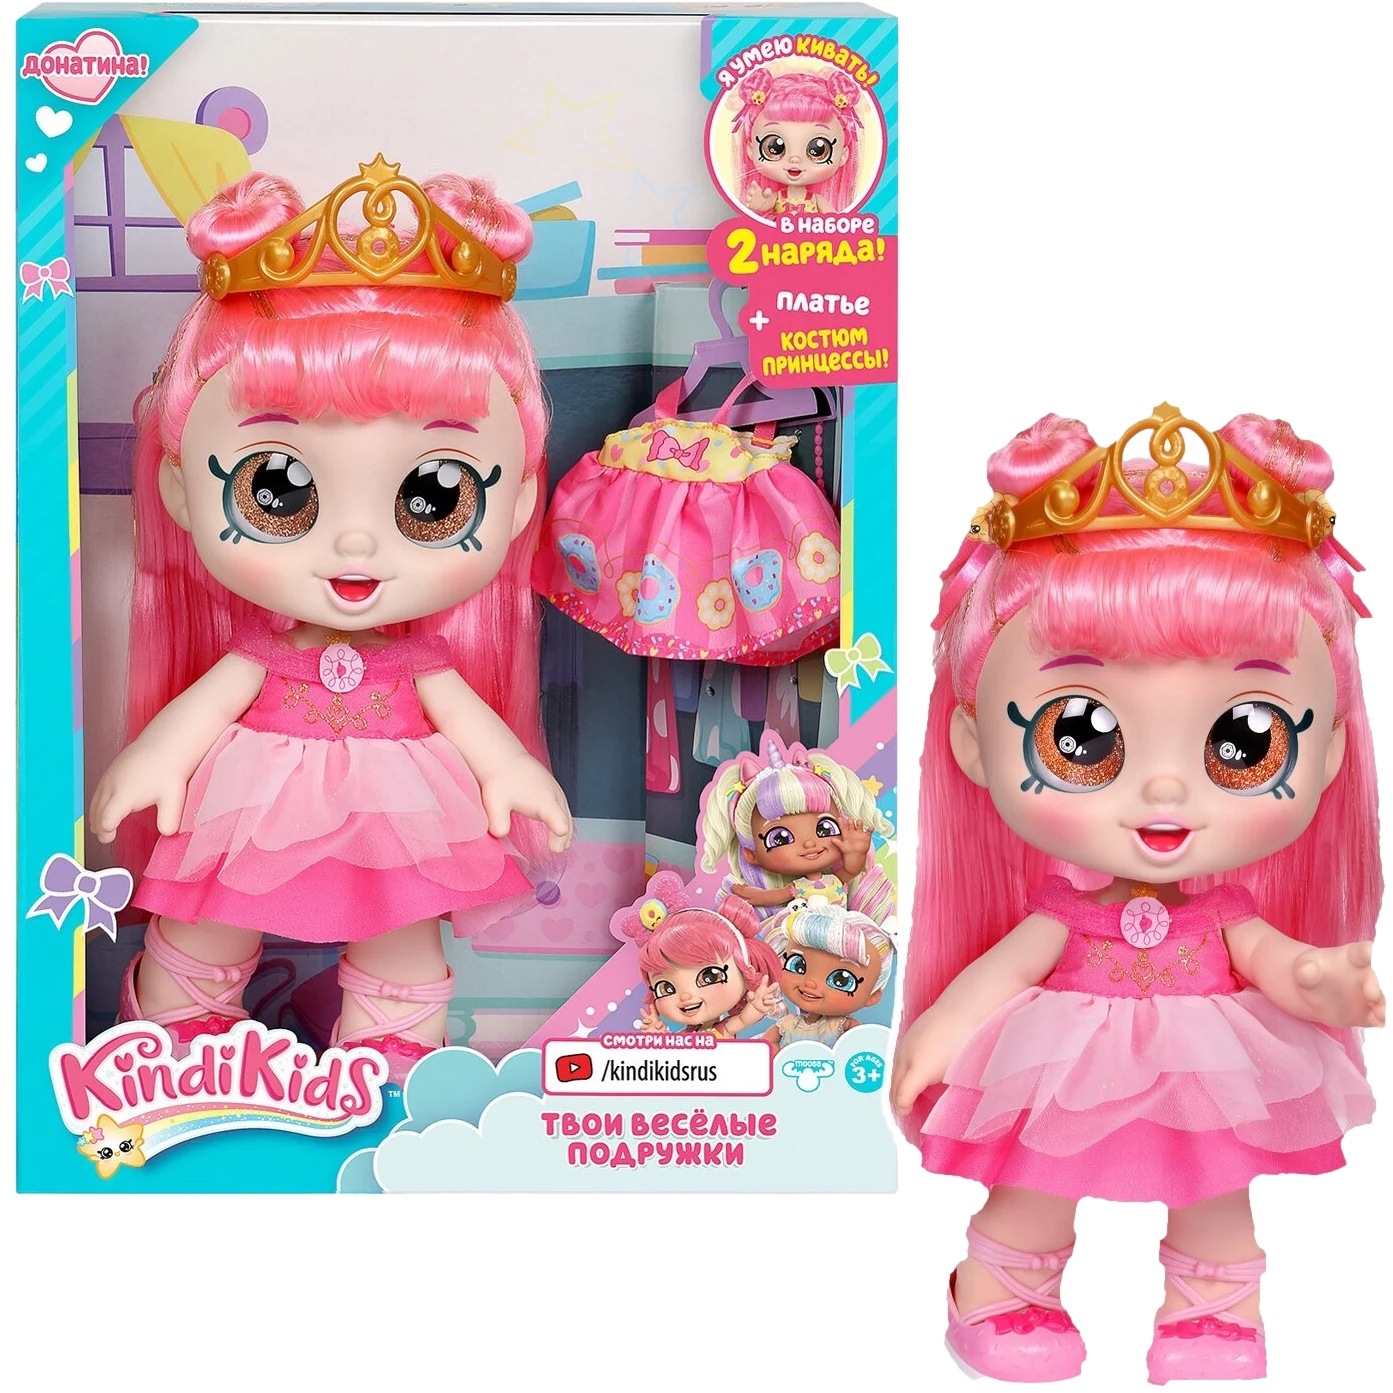 Игровой набор "Кинди Кидс" Кукла Донатина Принцесса 38836